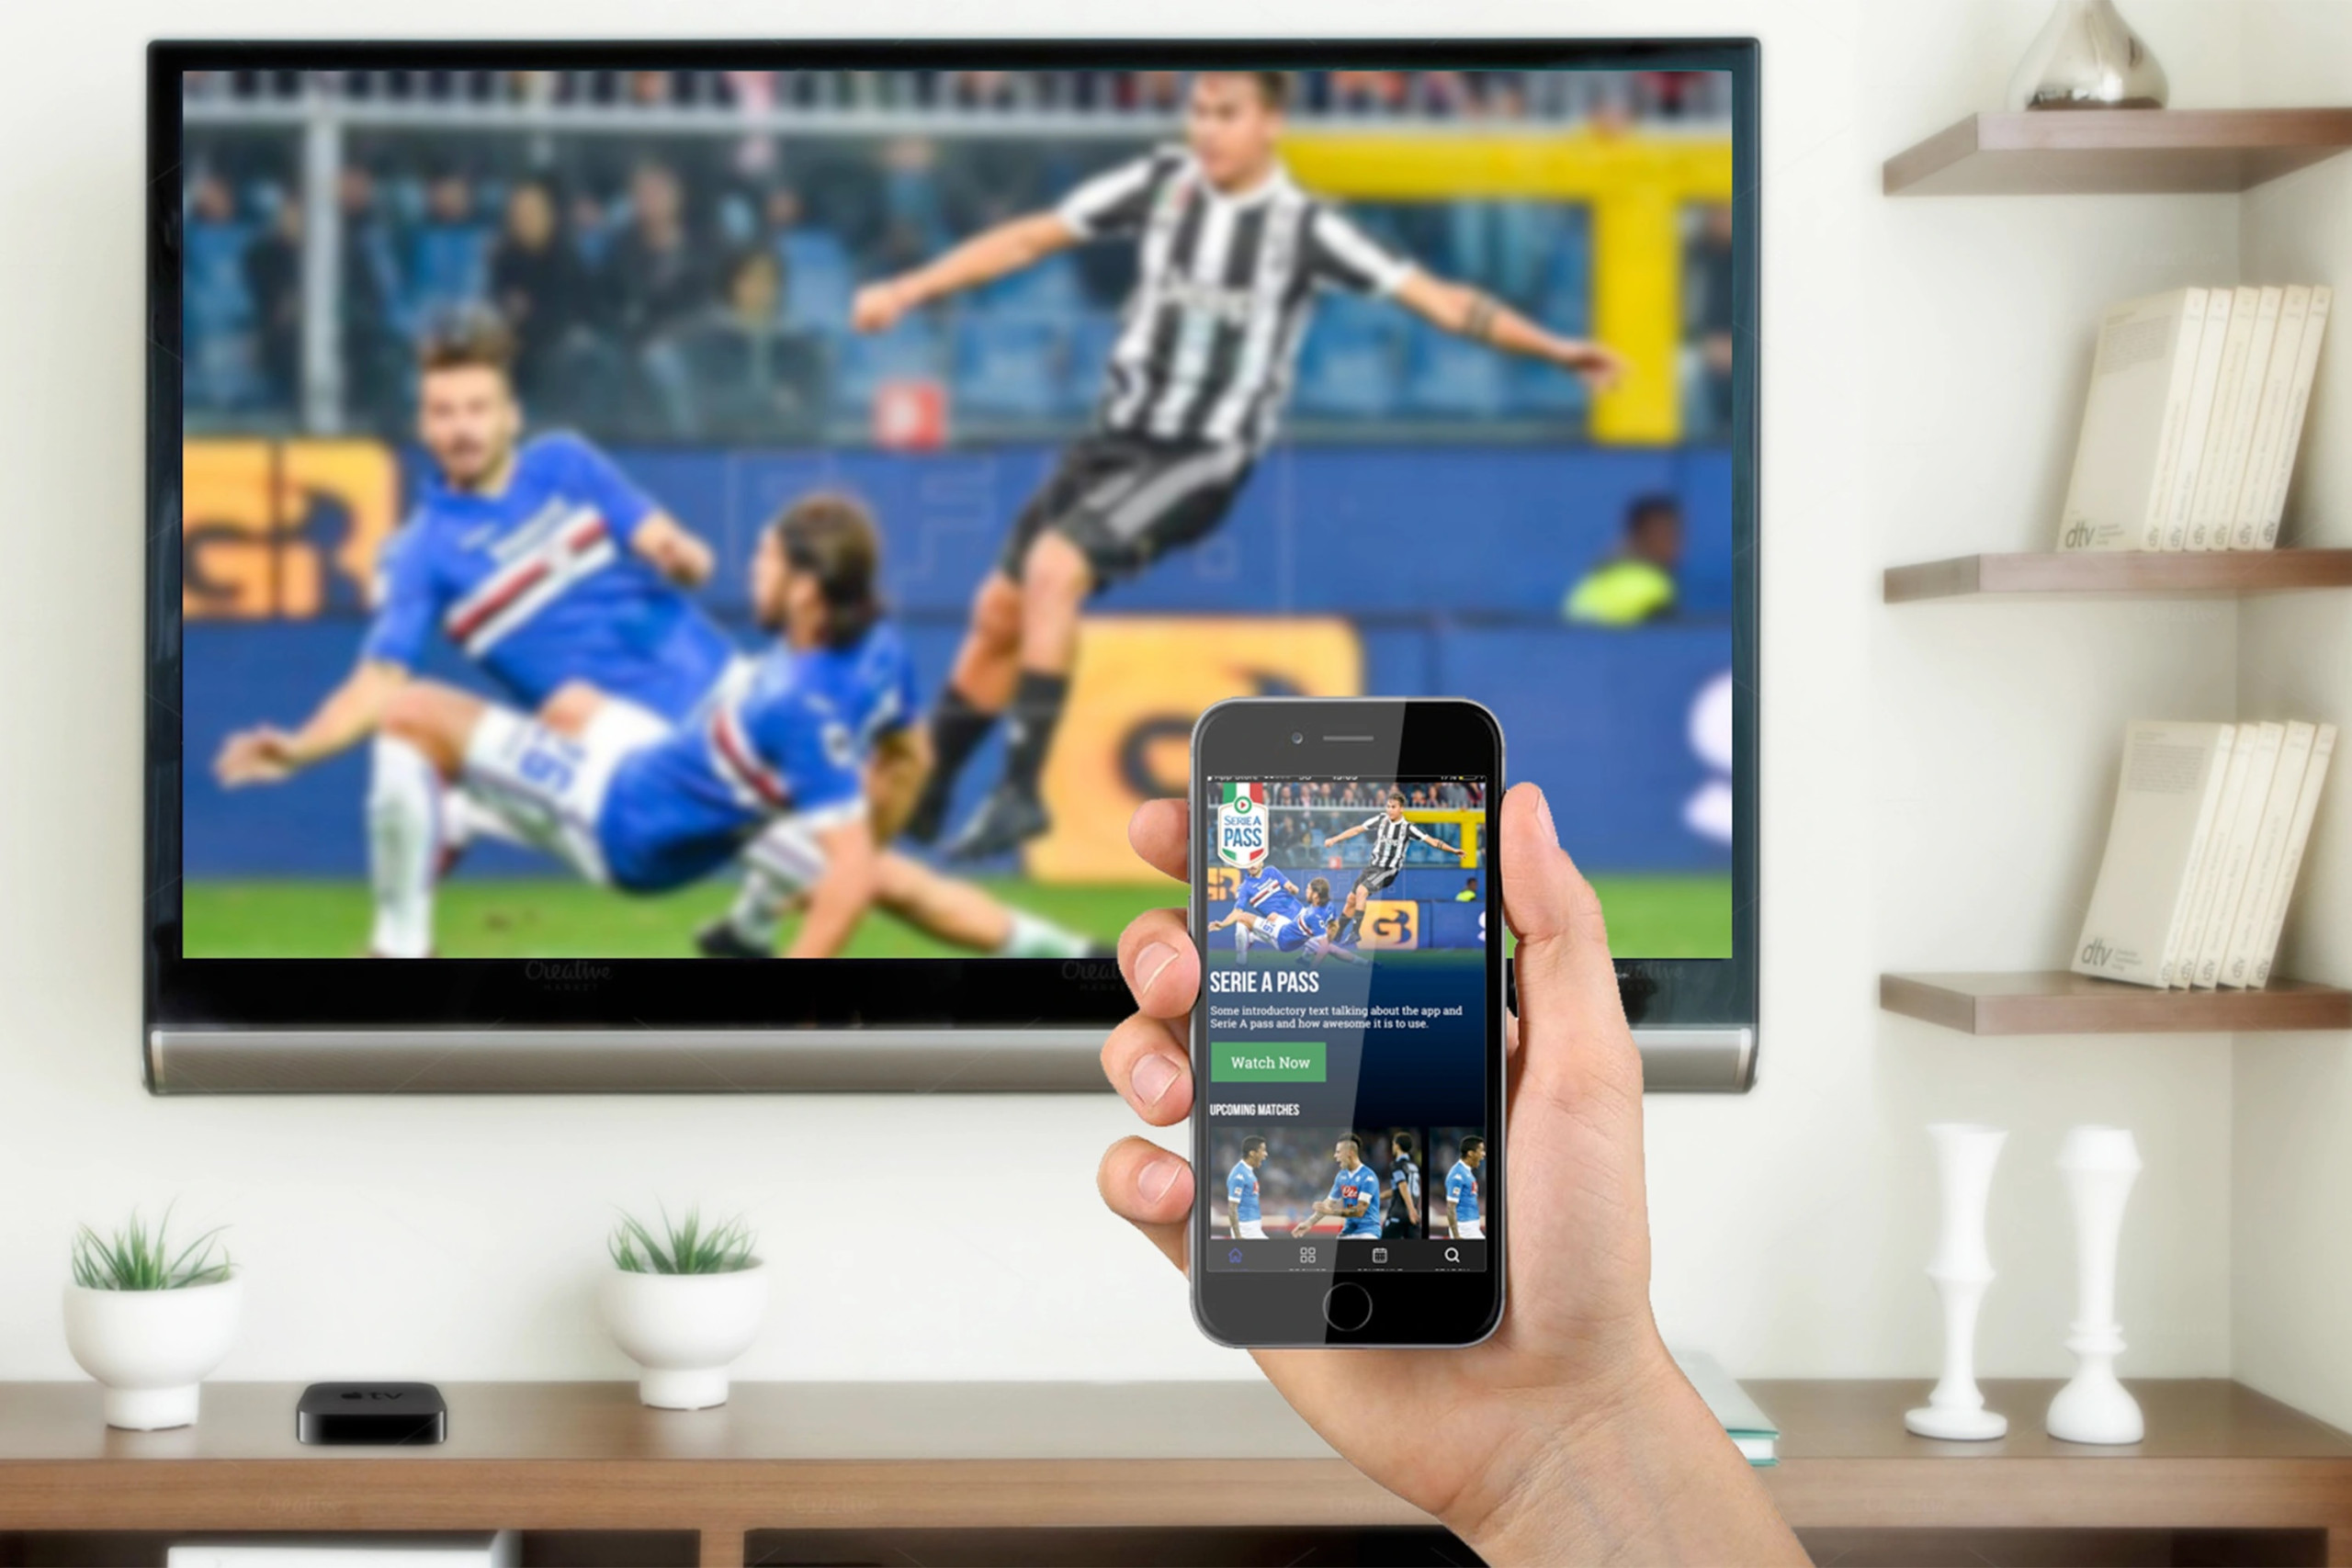 Campeonato Italiano stá disponível pelo aplicativo Serie A Pass Divulgação